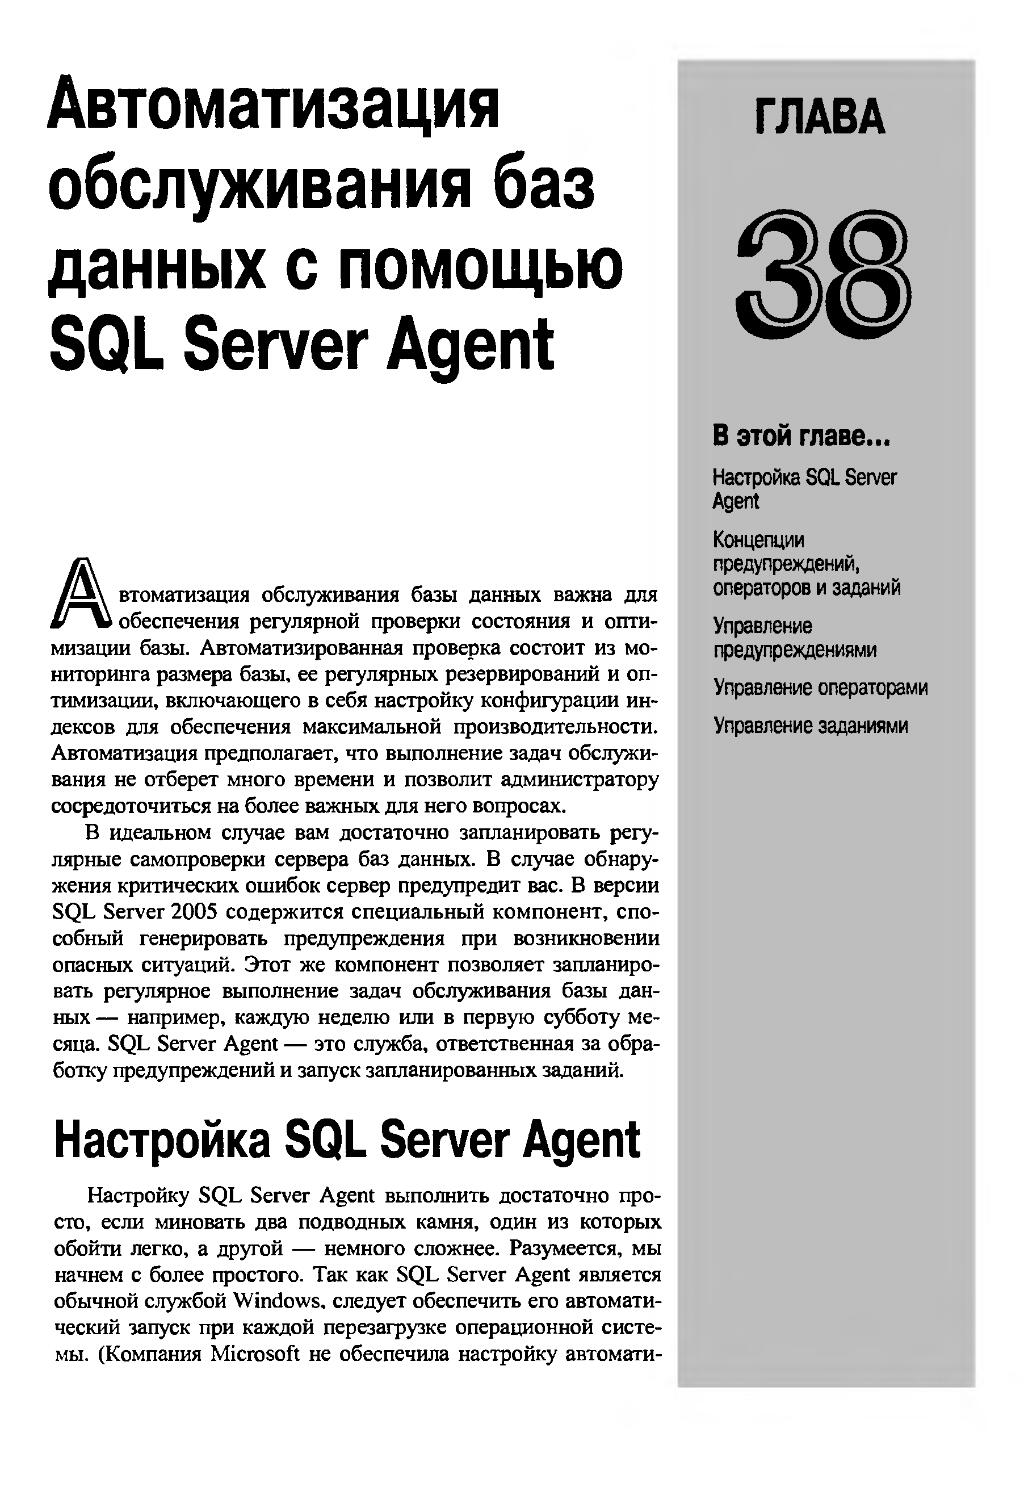 ГЛАВА 38. Автоматизация обслуживания баз данных с помощью SQL Server Agent